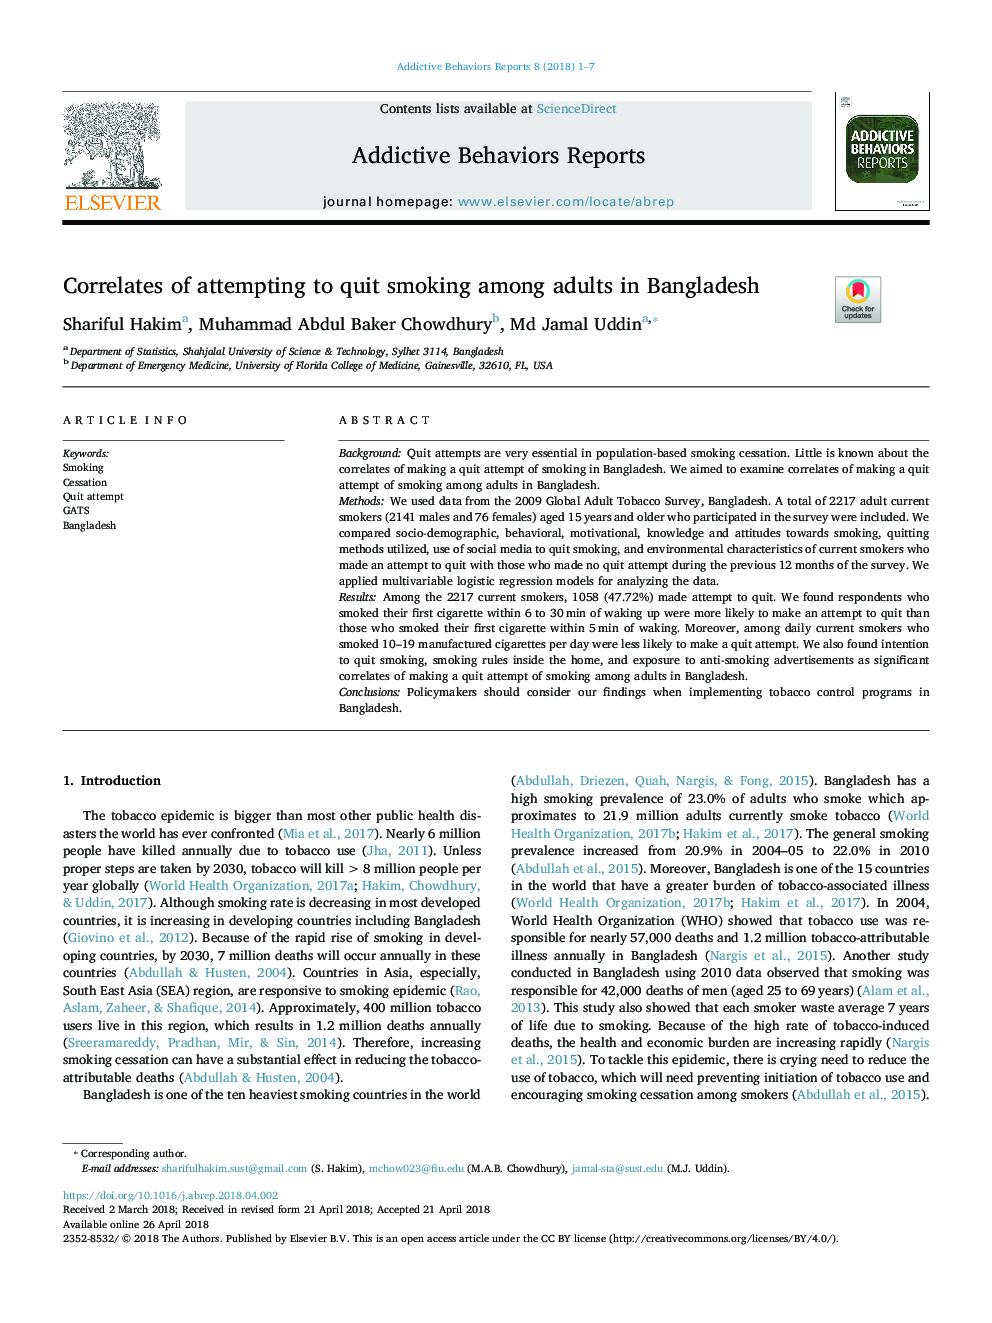 در رابطه با تلاش برای ترک سیگار در میان بزرگسالان در بنگلادش 